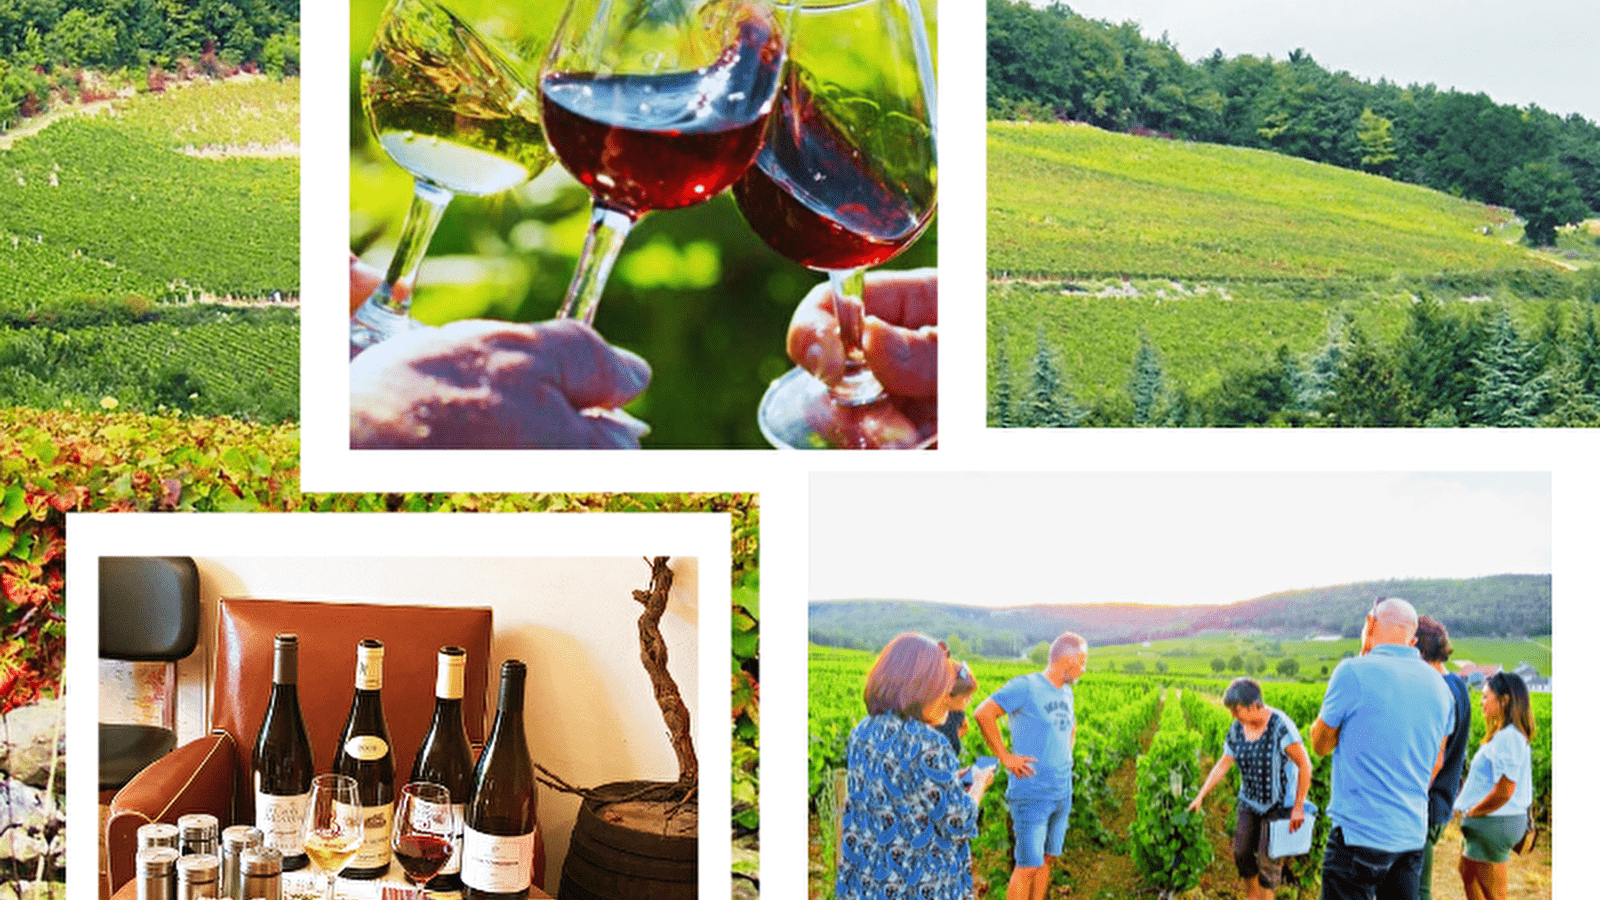 Balade  oeno-sensorielle -découverte  des secrets  vins  de Bourgogne 